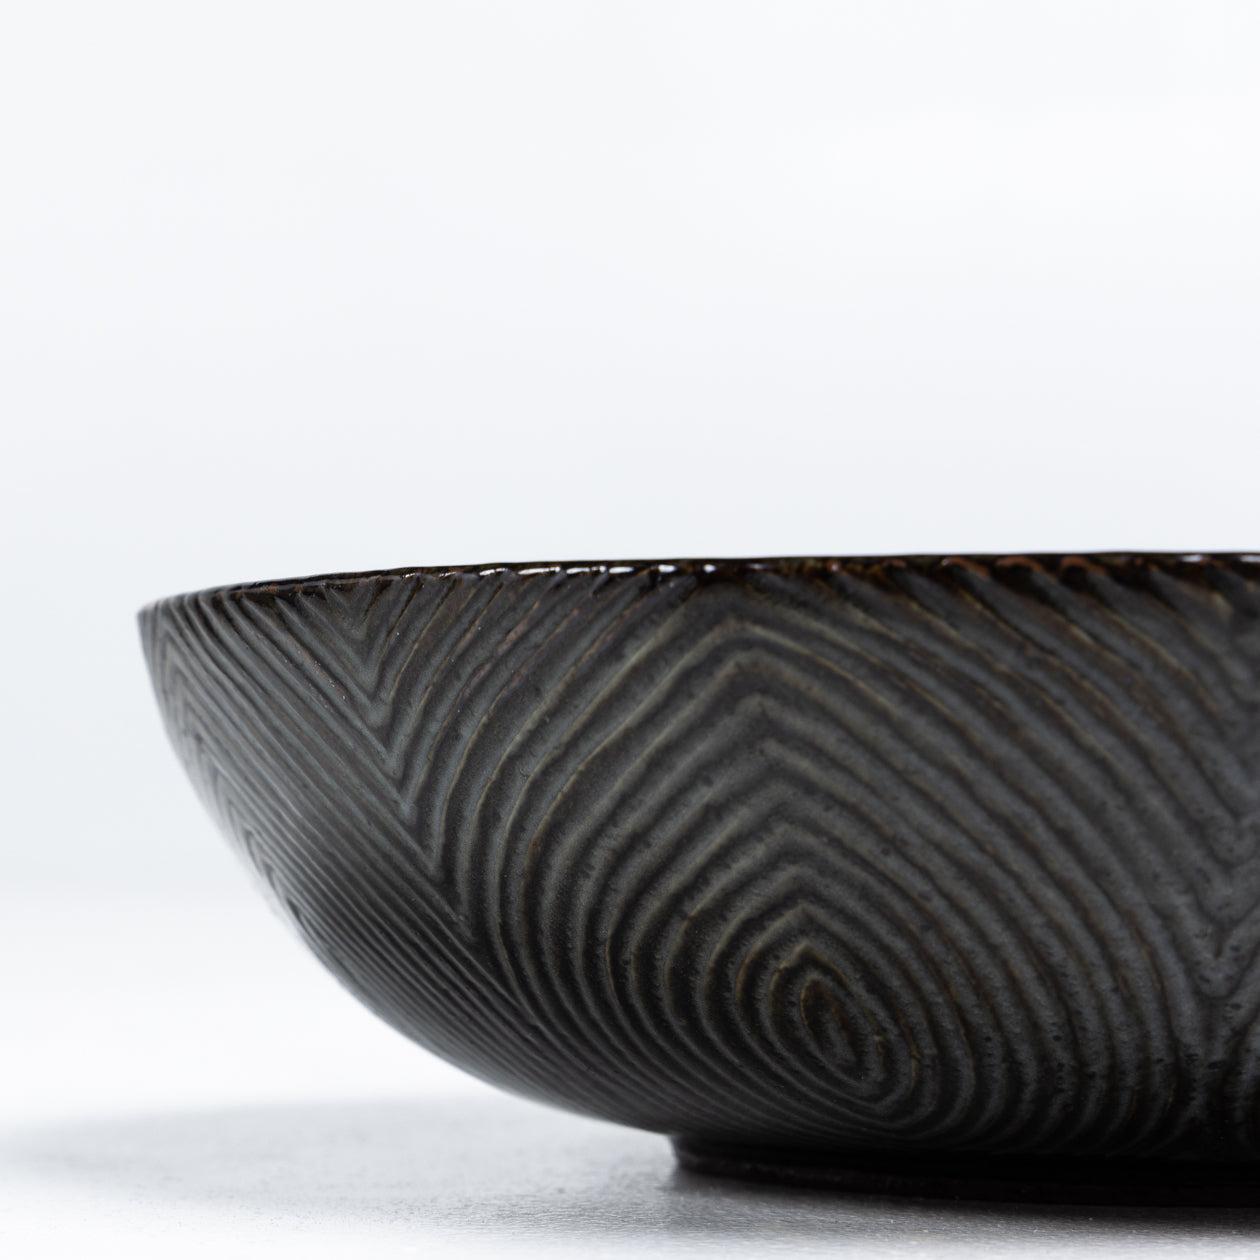 Schale aus glasiertem Steingut mit Schmetterlingsflügelglasur. Unterschrieben.
Hergestellt von Royal Copenhagen